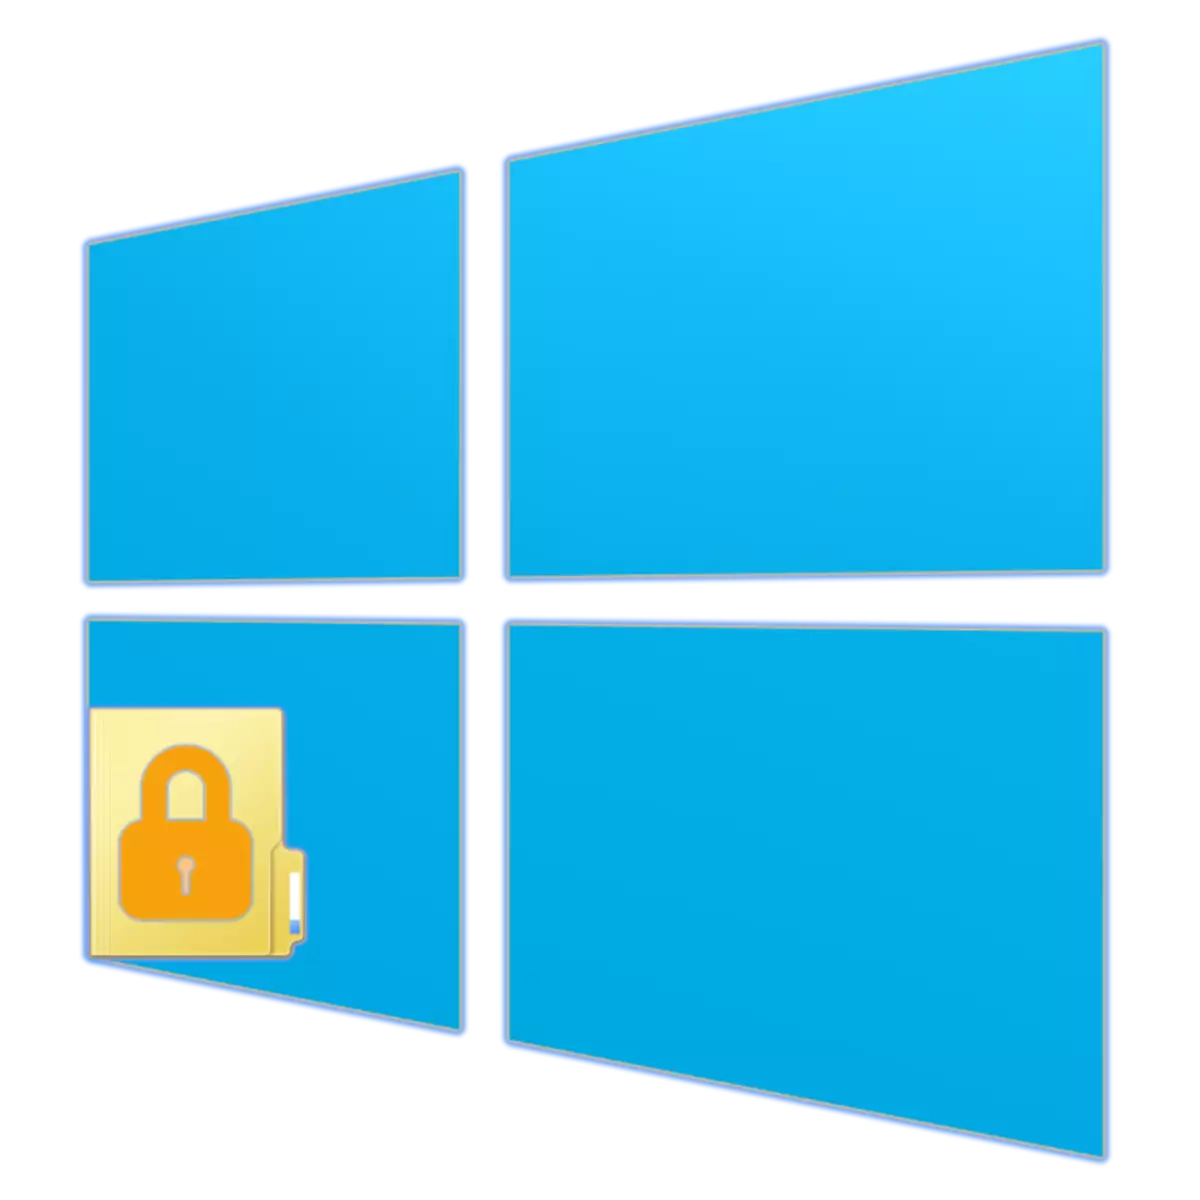 Comment mettre un mot de passe au dossier dans Windows 10